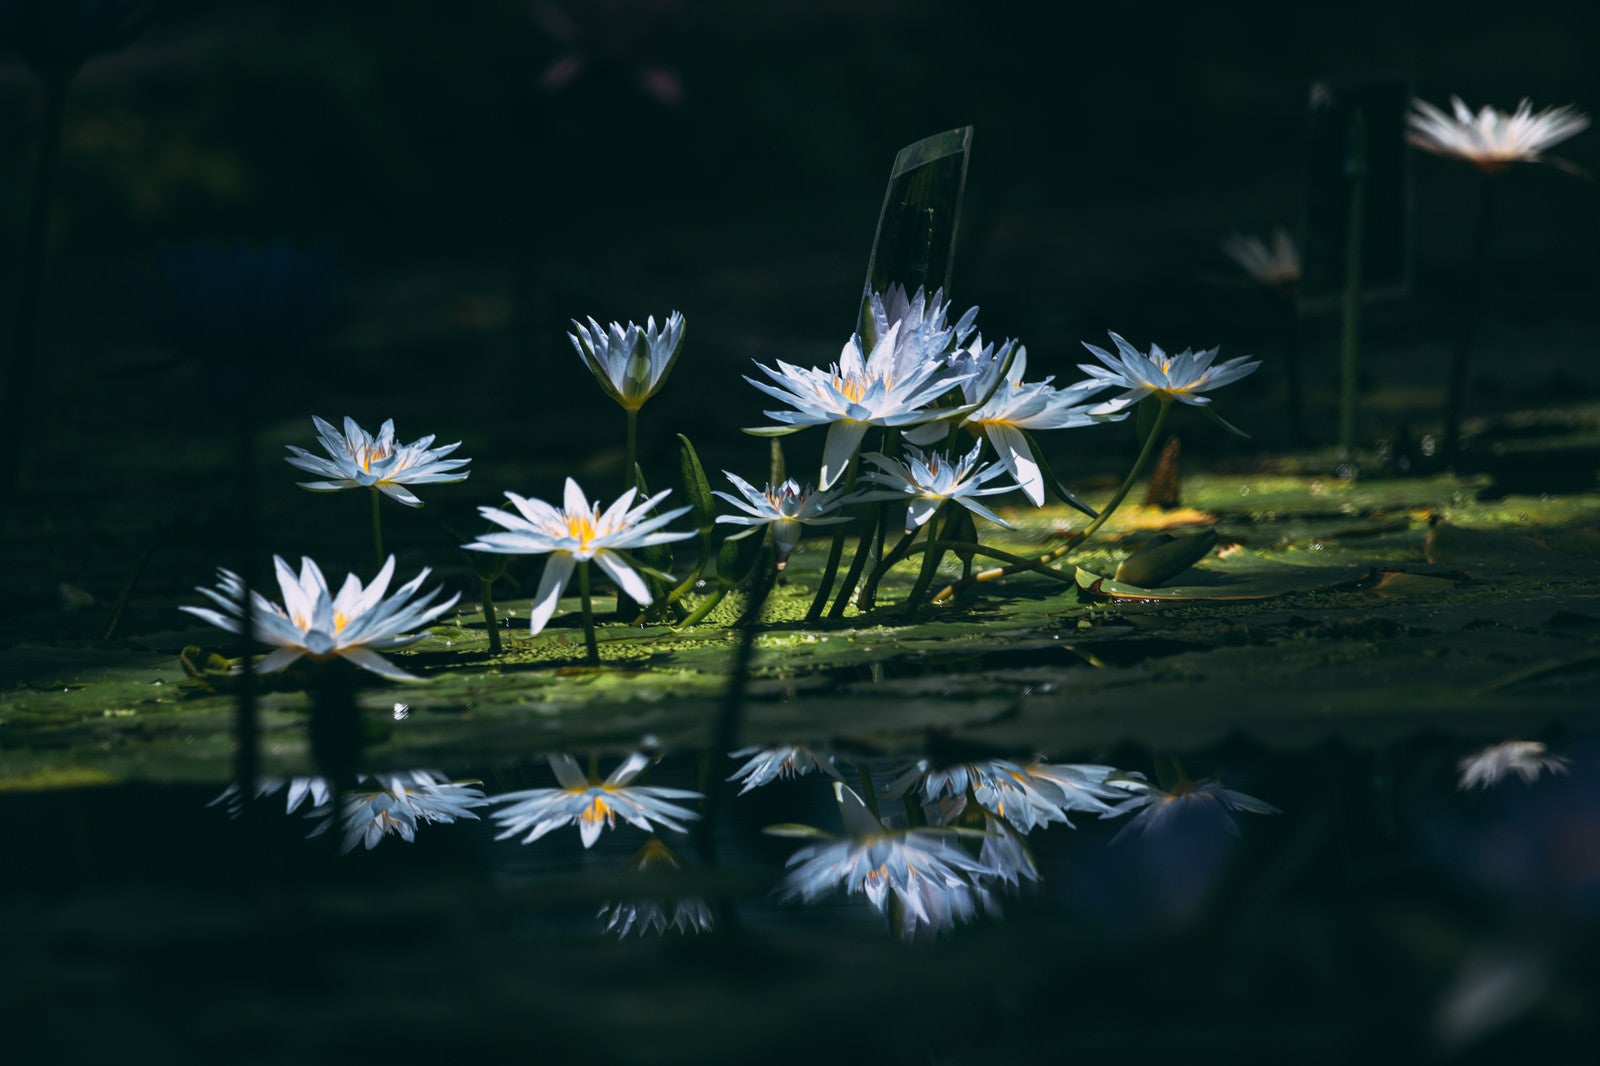 「沢山咲いている暗闇の白睡蓮」の写真